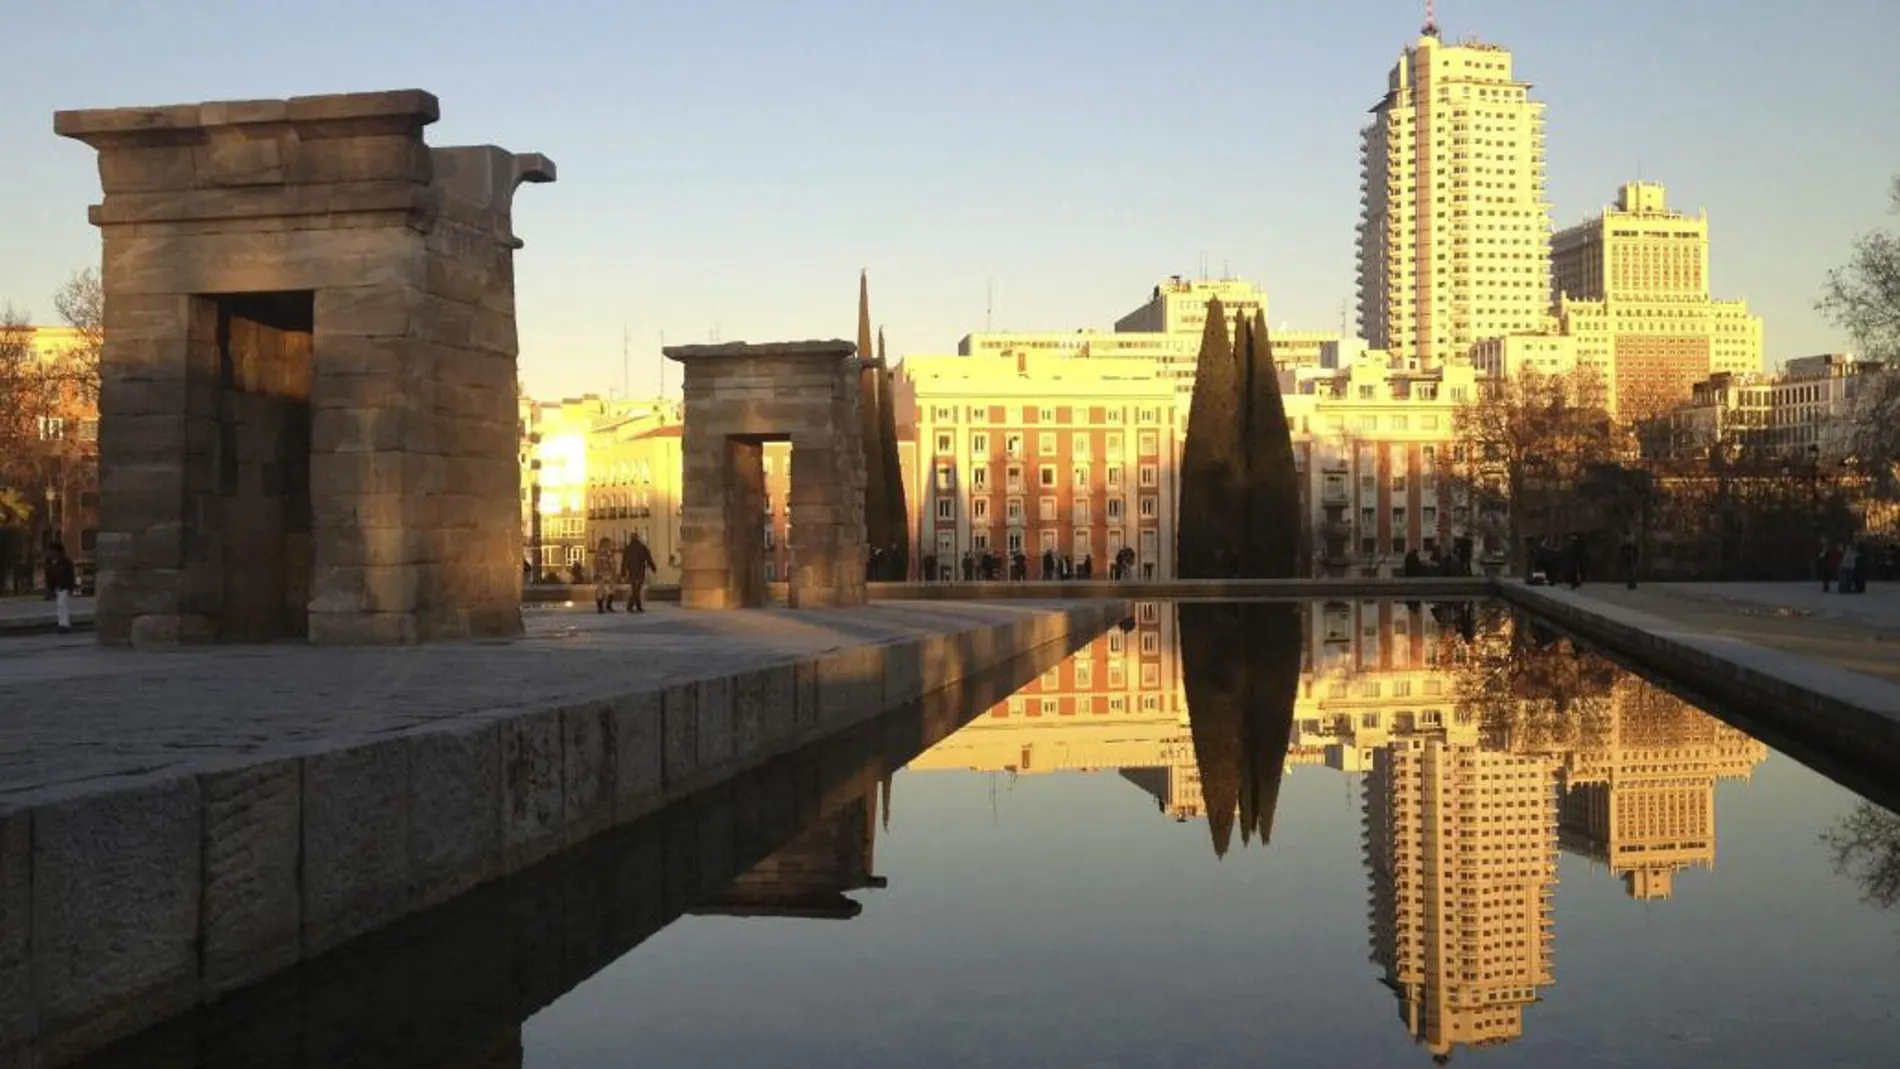 Visitar el Templo de Debod es obligado en Madrid